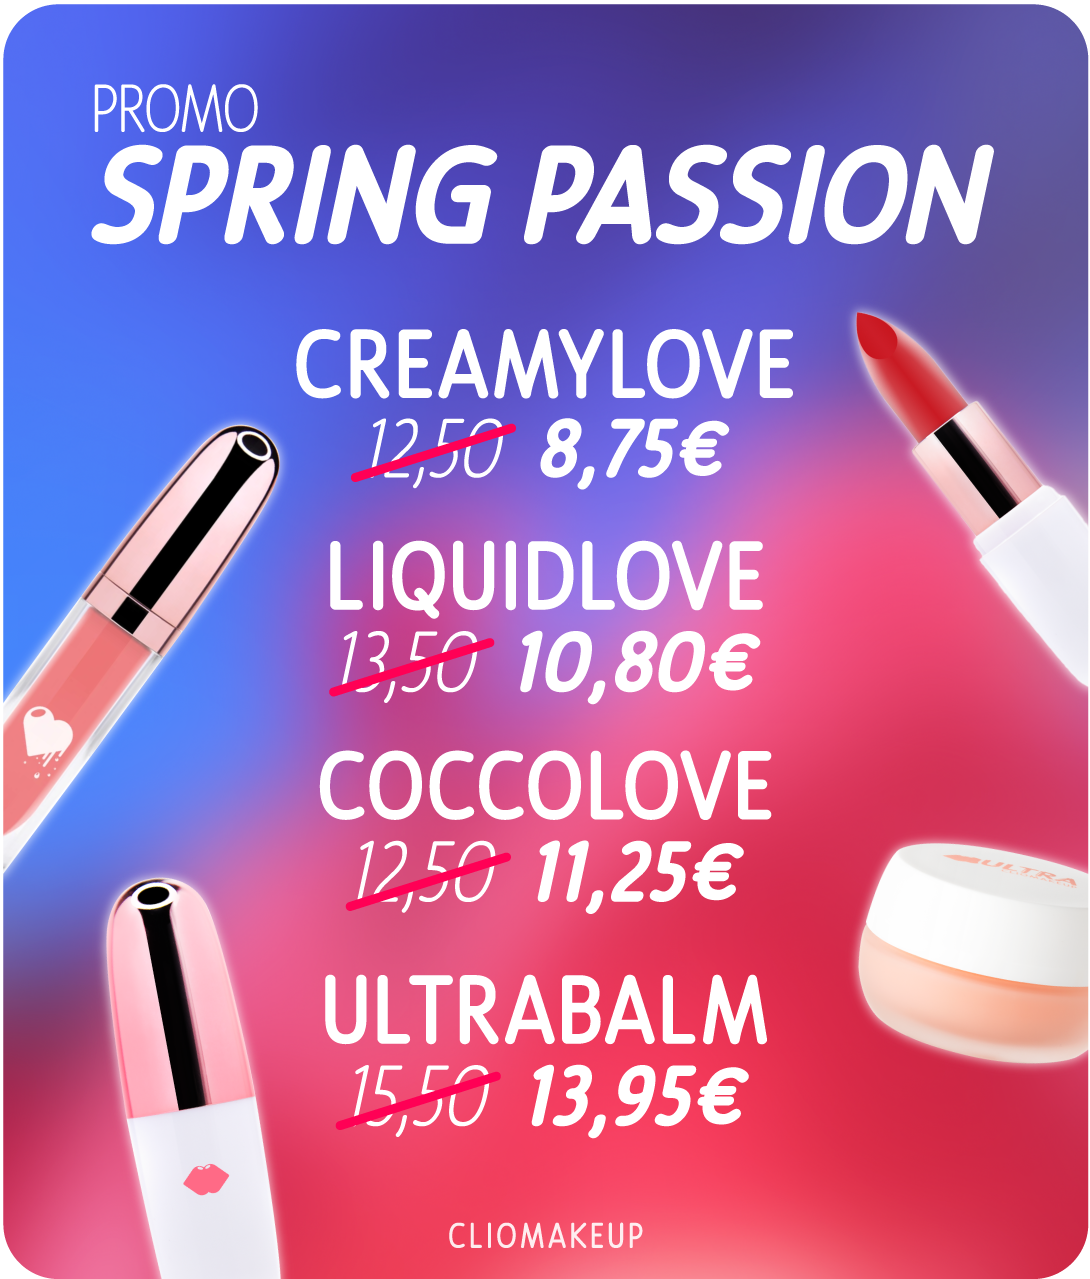 cliomakeup cliomakeupshop promo spring passion creamylove coccolove liquidlove ultrabalm